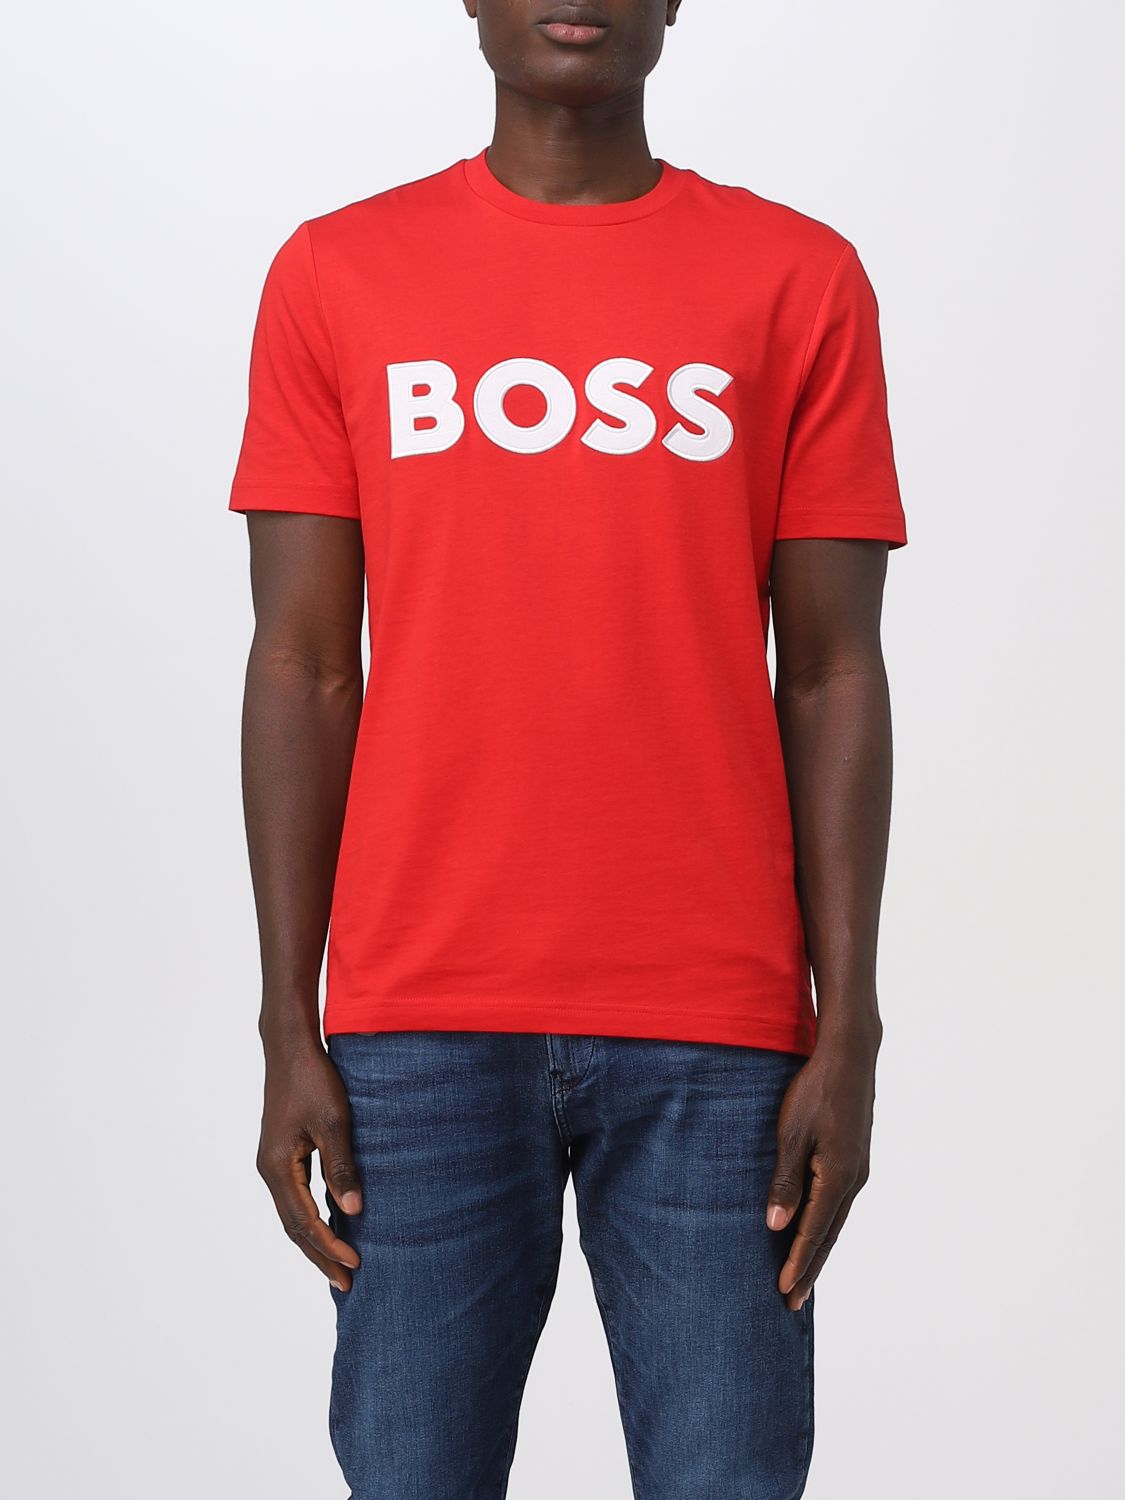 Hugo Boss T-shirt Boss Herren Farbe Rot In Red